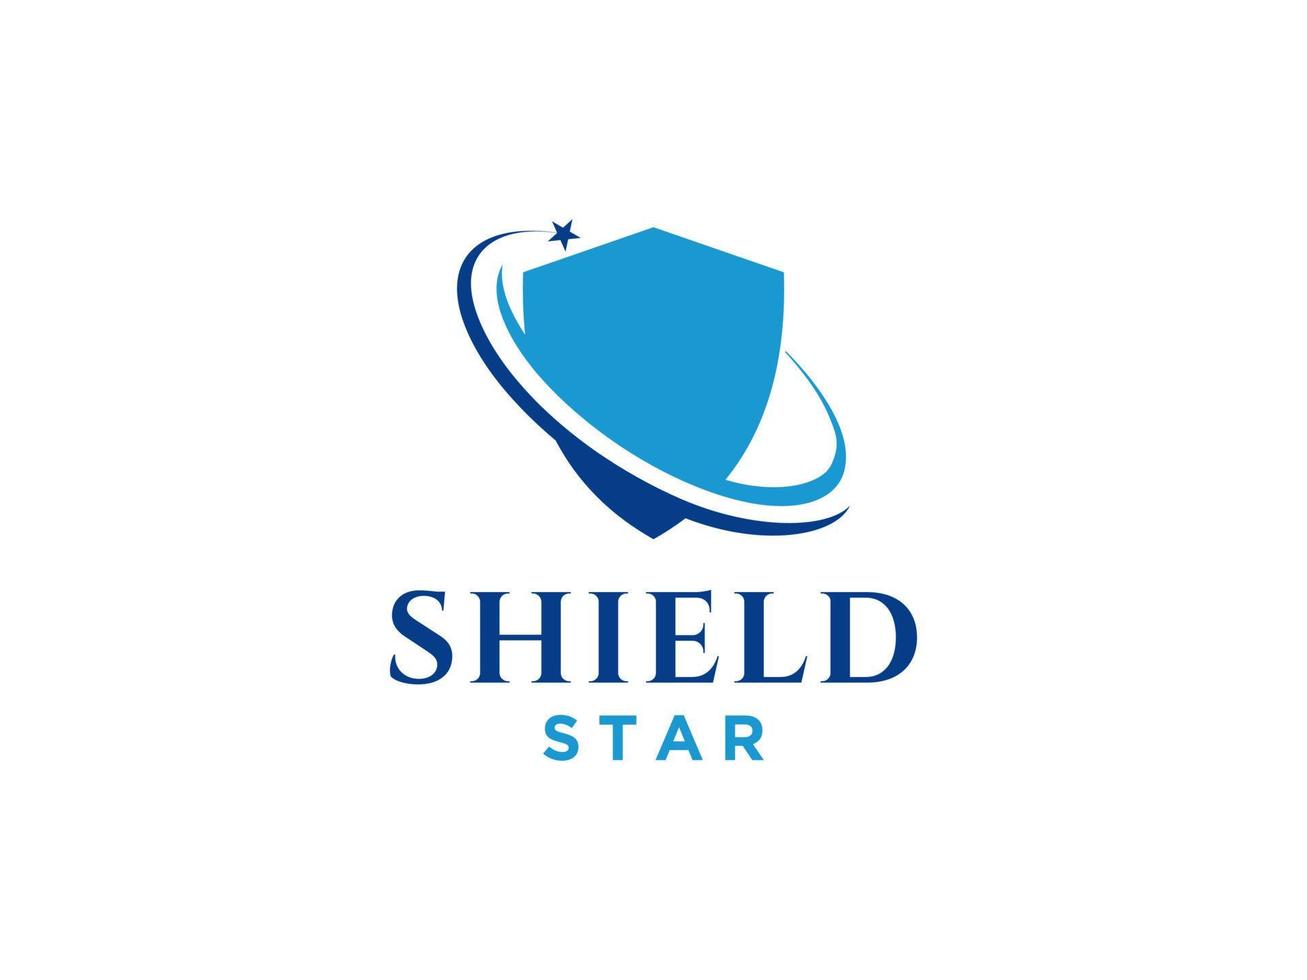 sköld stjärna för vakt säkerhet stark säker skydda försäkring logo design. användbar för företags- och varumärkeslogotyper. platt vektor logotyp designmall element.